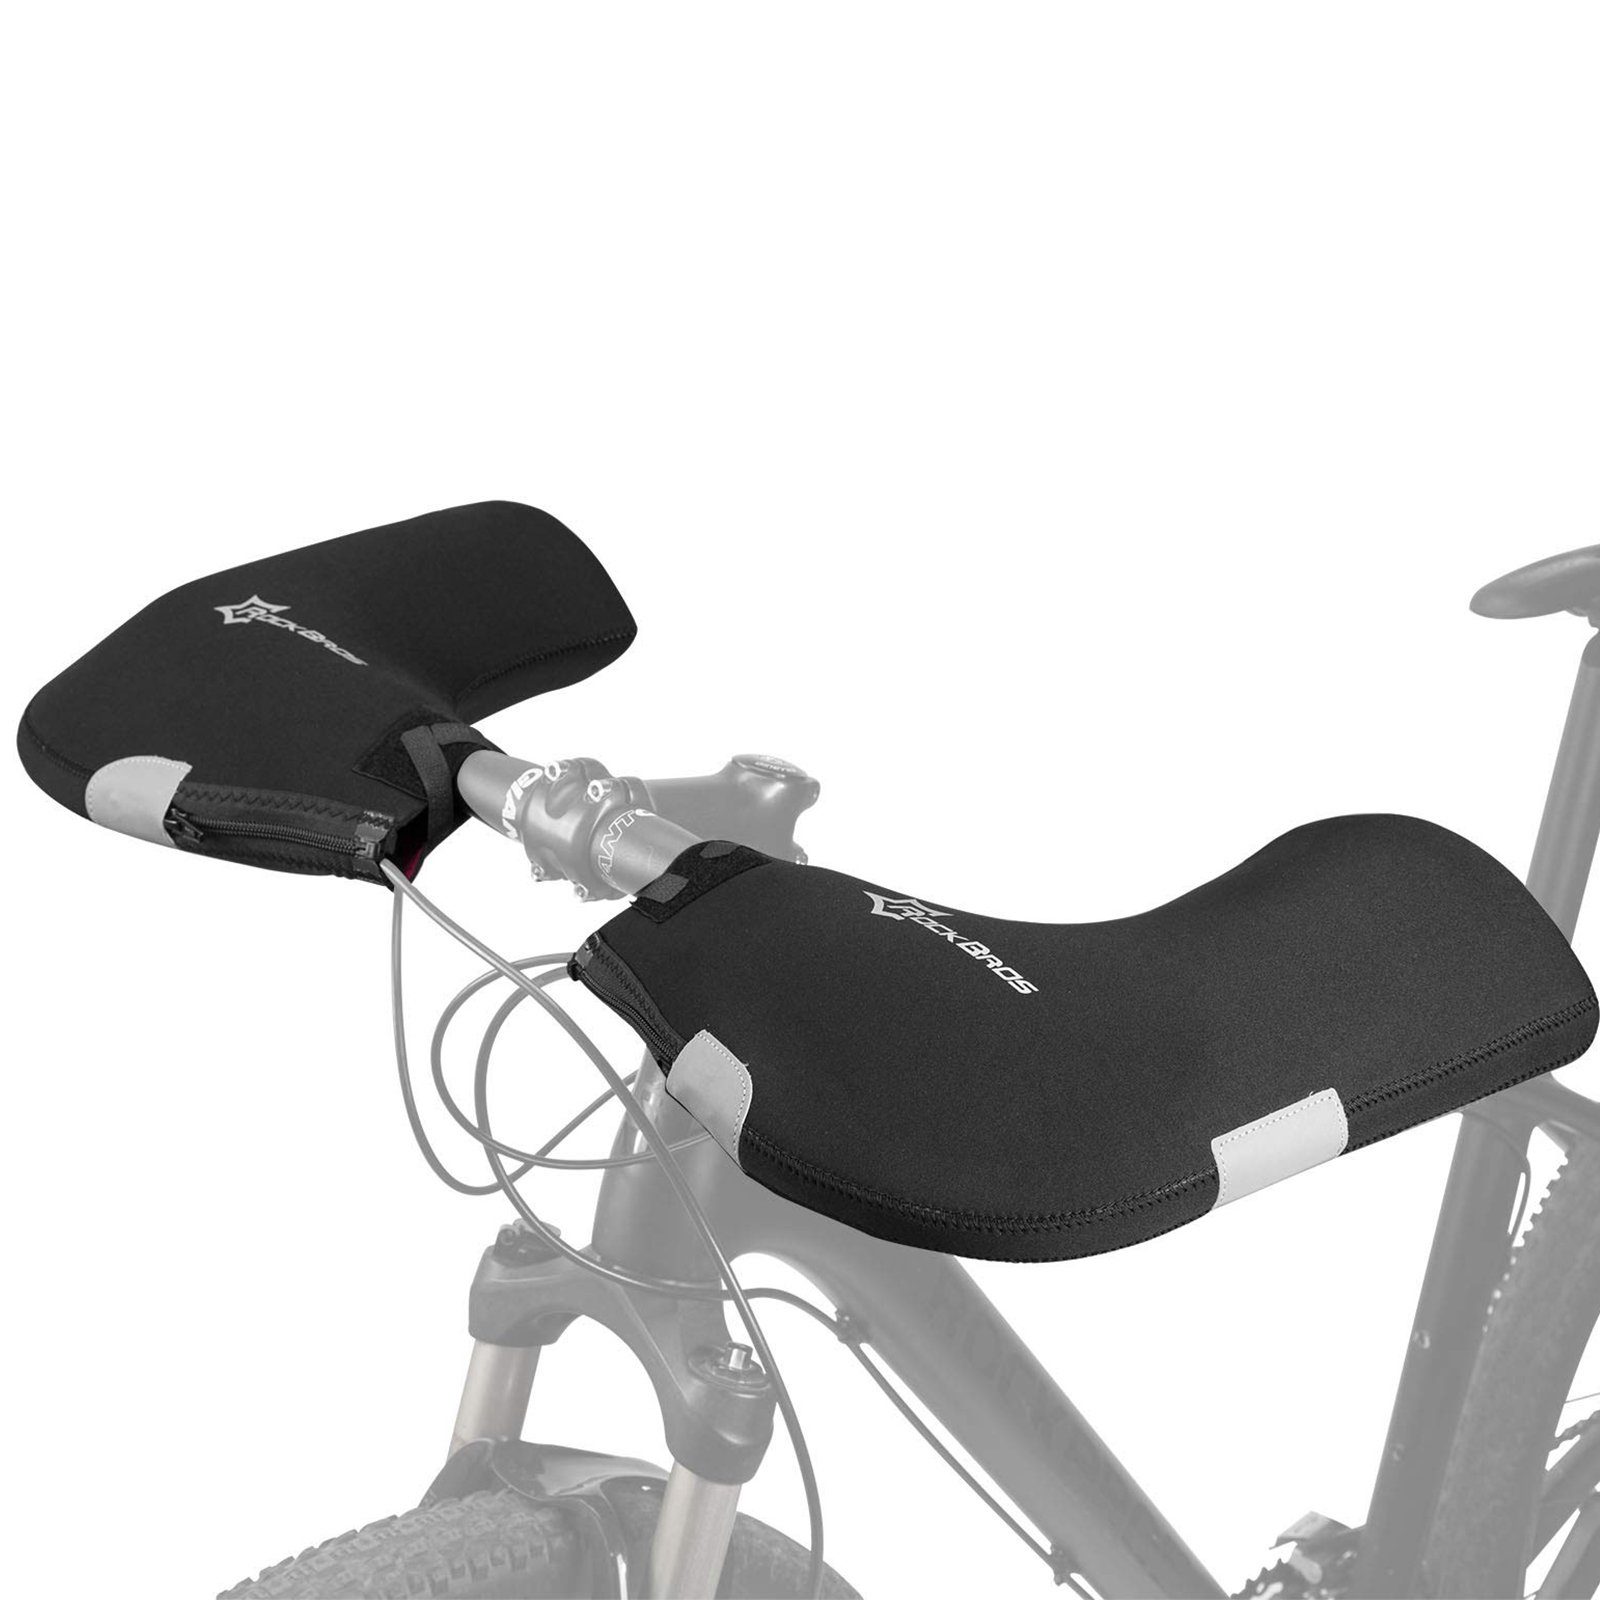 ROCKBROS Motorradhandschuhe Gefüttert Winddicht Wasserfest Reflektierend Lenkerstulpen Lenker Handschuhe für Fahrrad Motorrad Roller Scooter schwarz